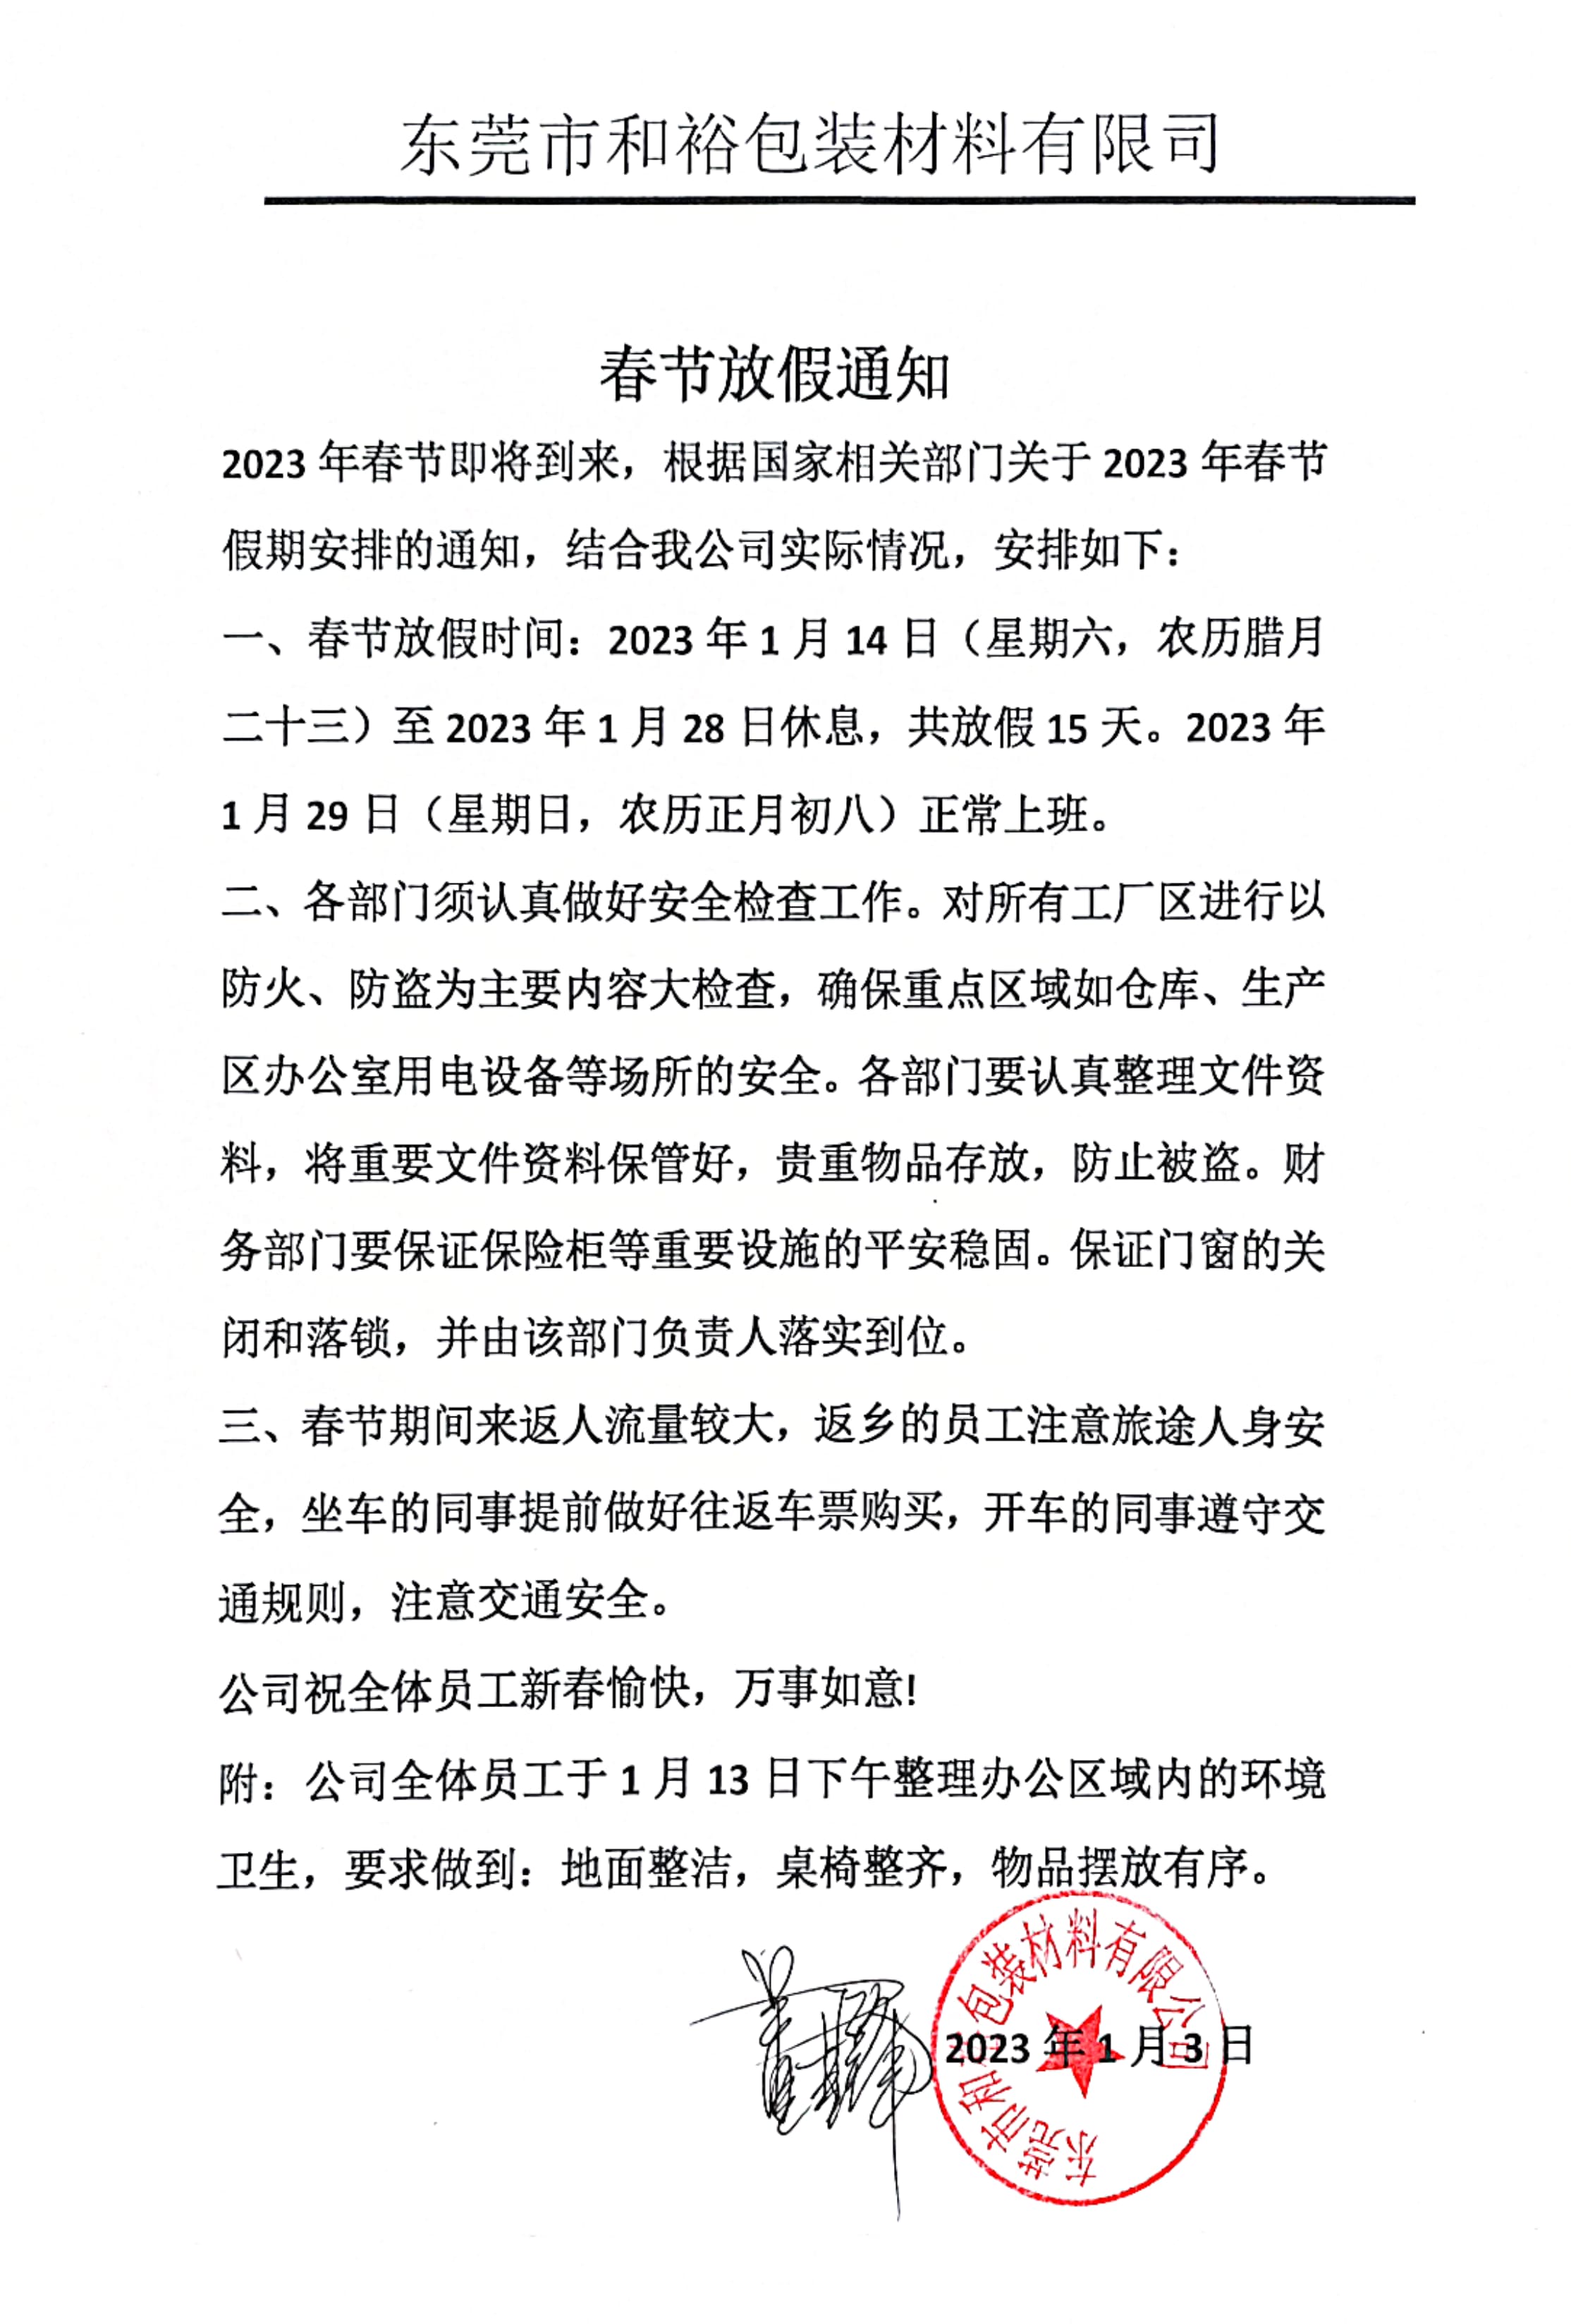 仙桃高新技术产业开发区2023年和裕包装春节放假通知